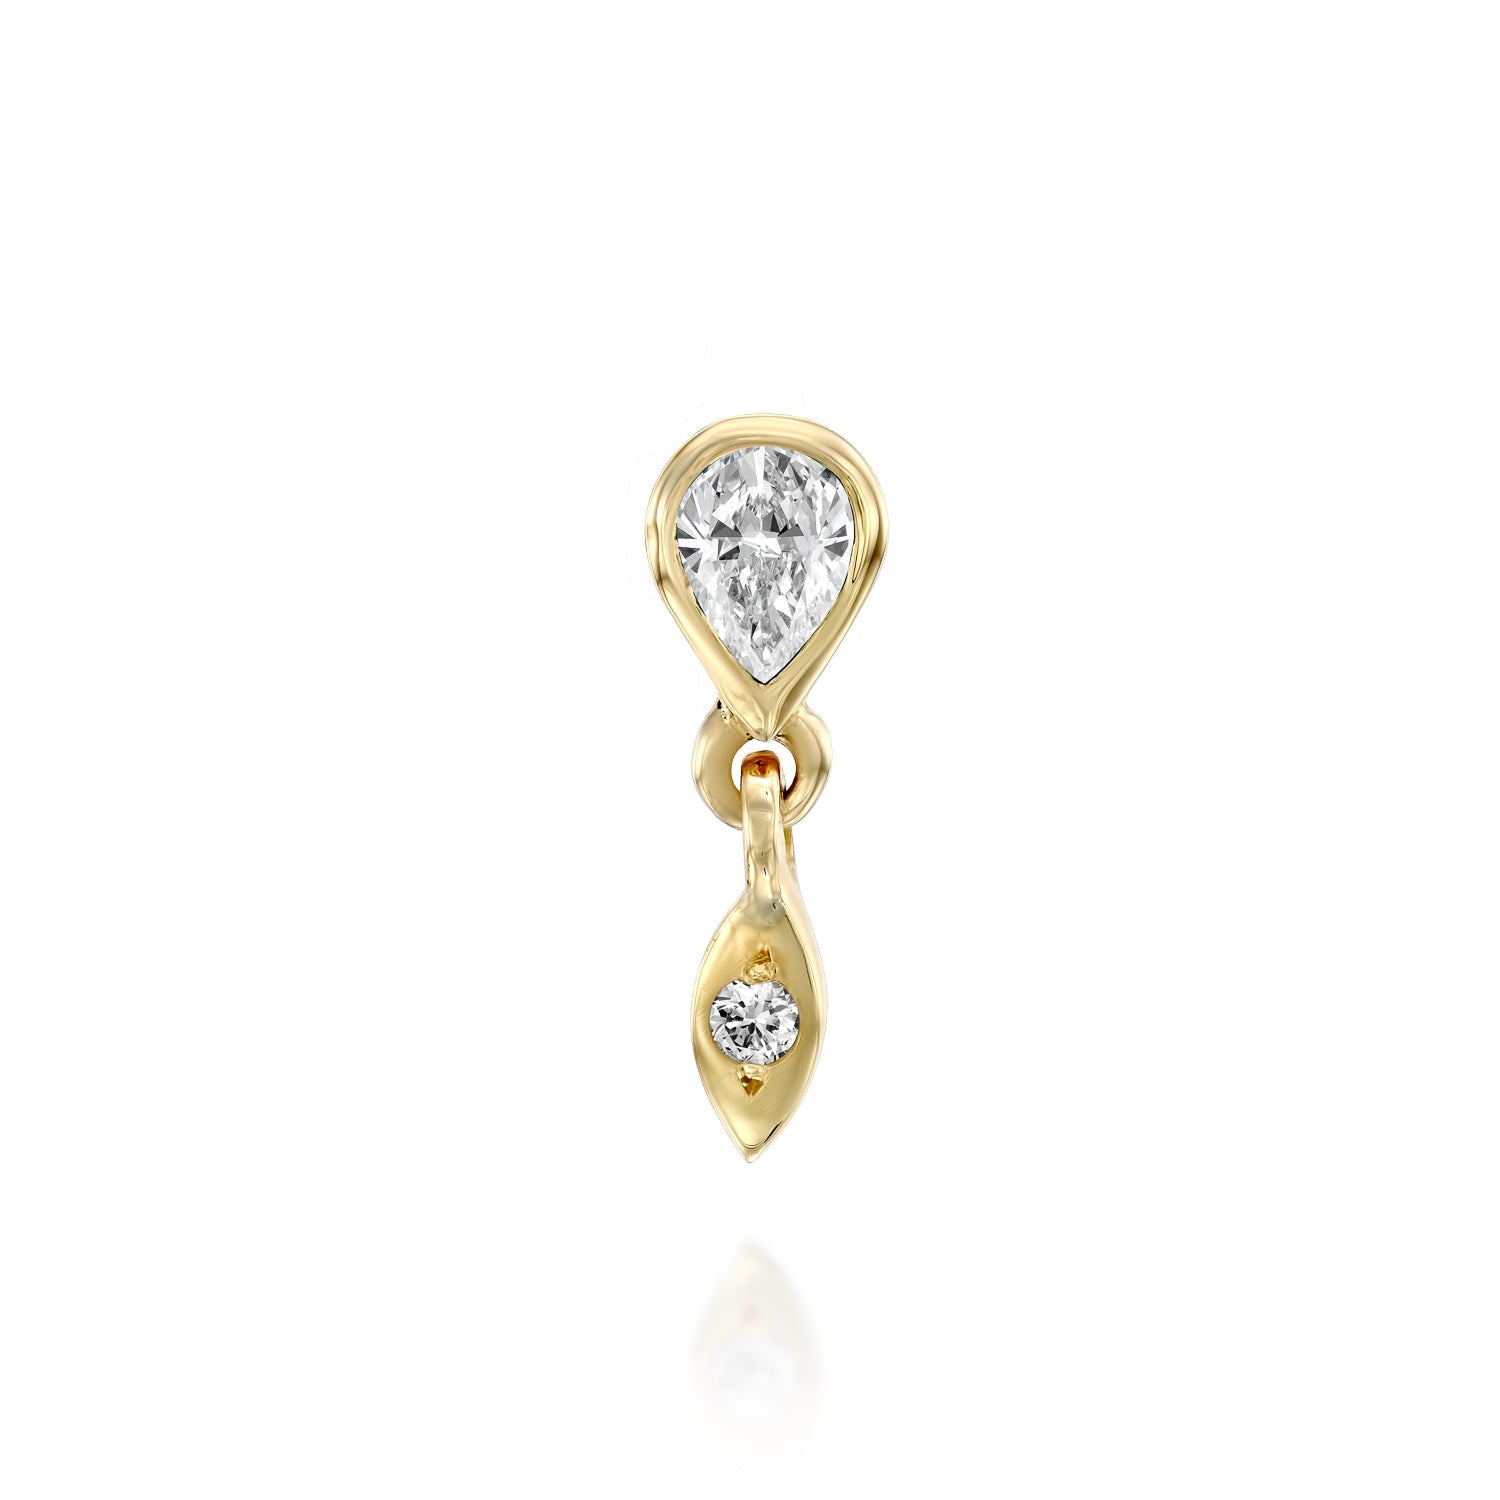 Joann earring - Diamond